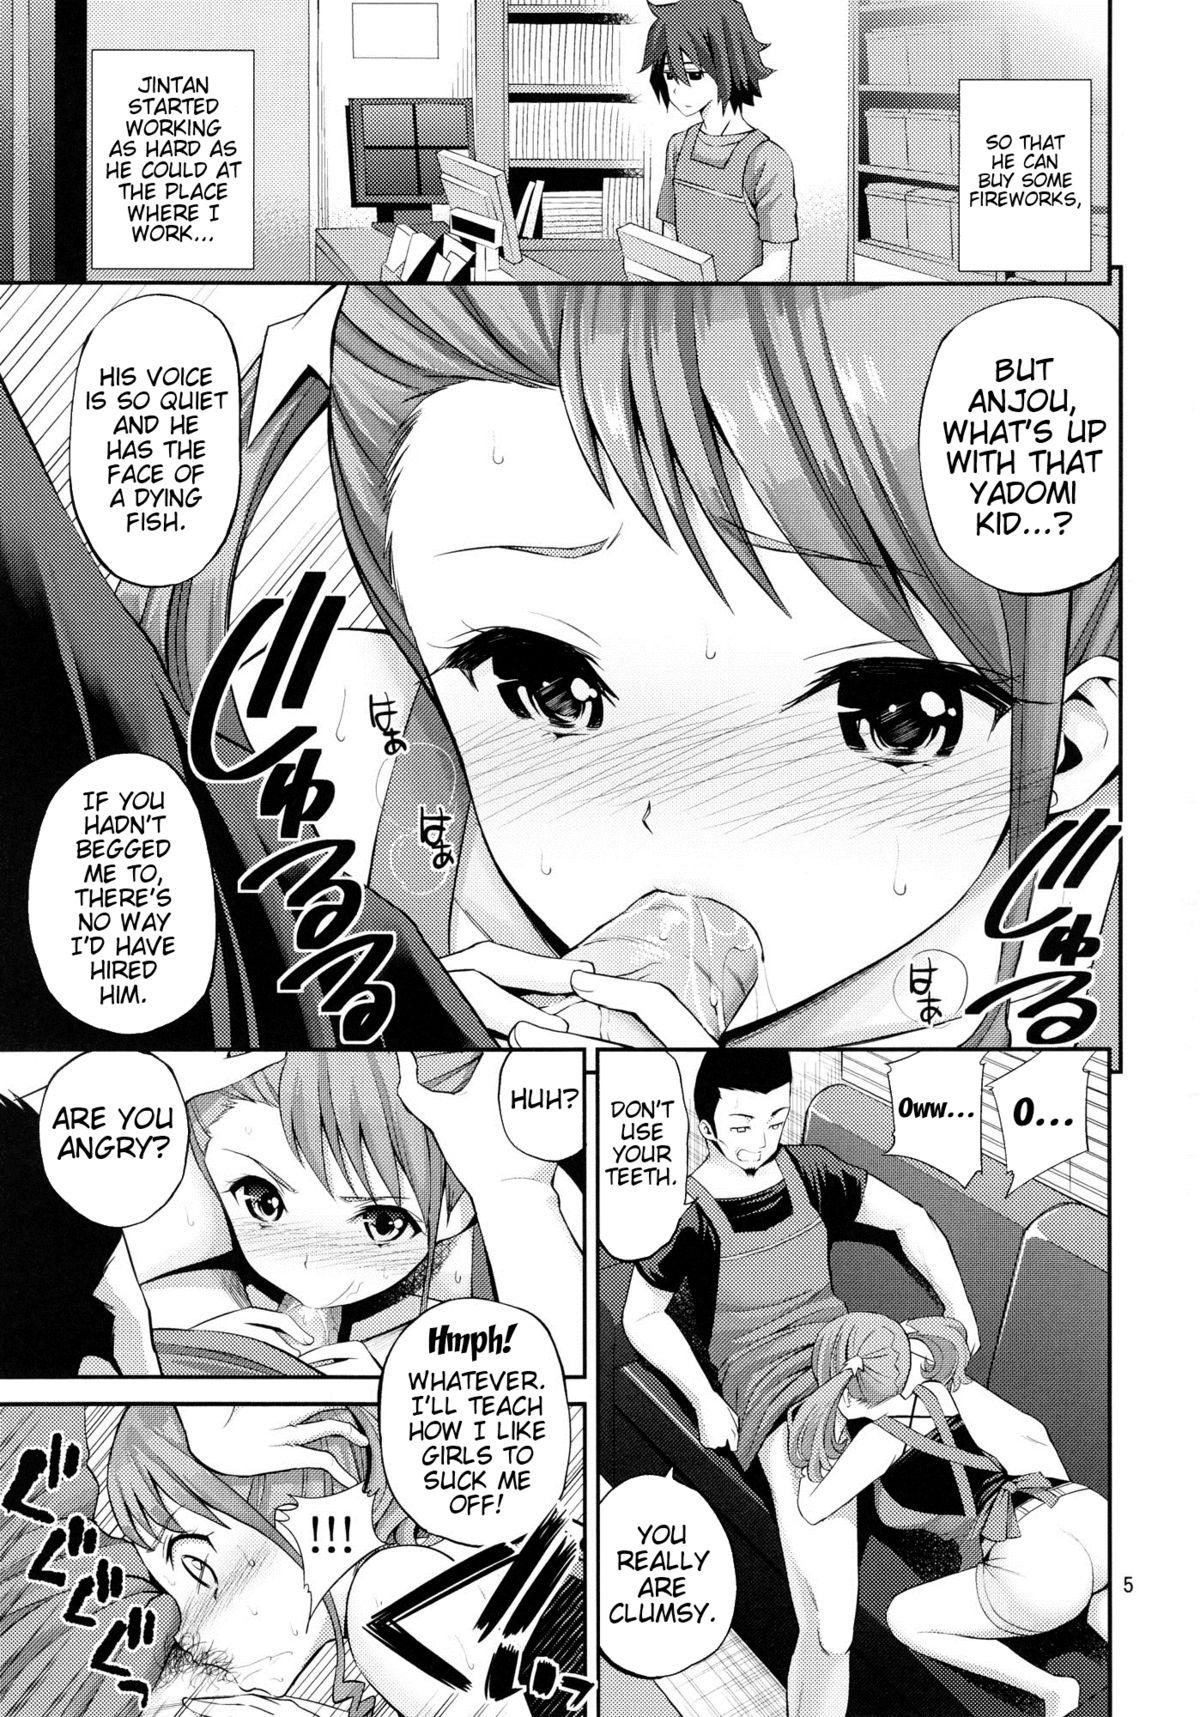 Spank Ano Anaru no Sundome Manga wo Bokutachi wa Mada Shiranai | Ano Anaru - The Netorare Manga We Read That Day - Ano hi mita hana no namae wo bokutachi wa mada shiranai Hardcore Porno - Page 4